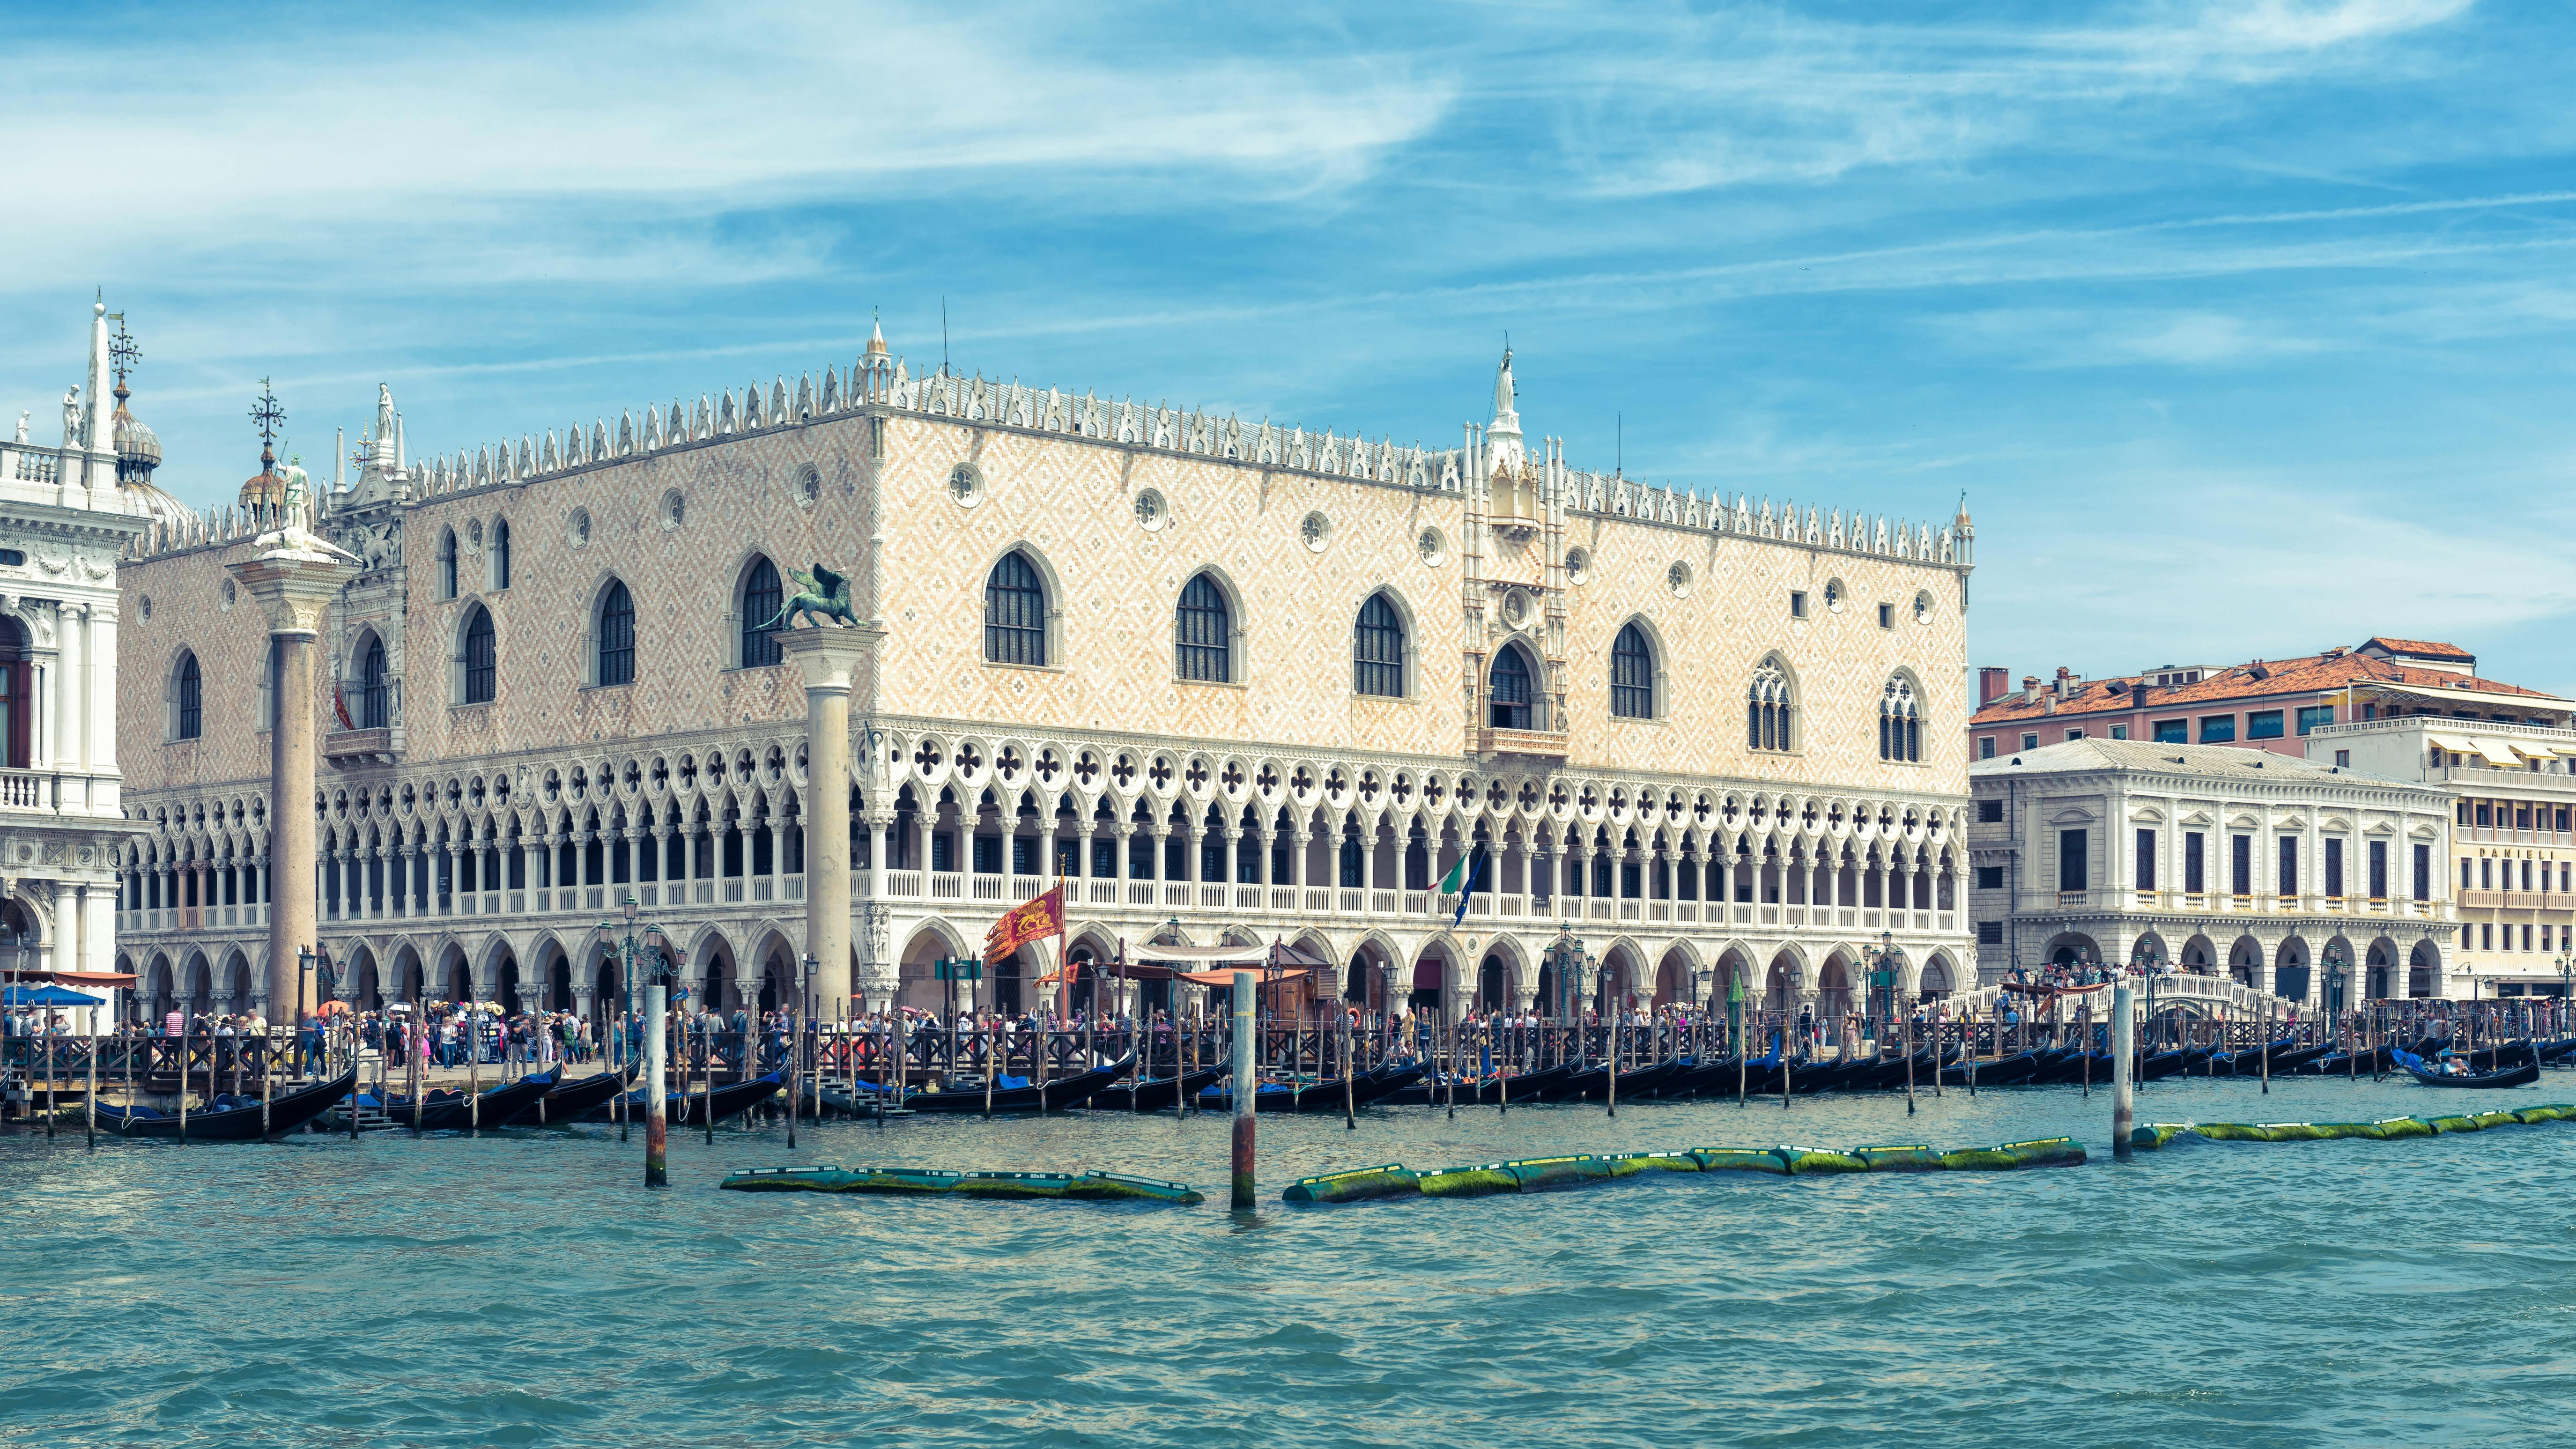 Udflugt til fods til Venedigs højdepunkter med Dogespaladset og Markuskirken